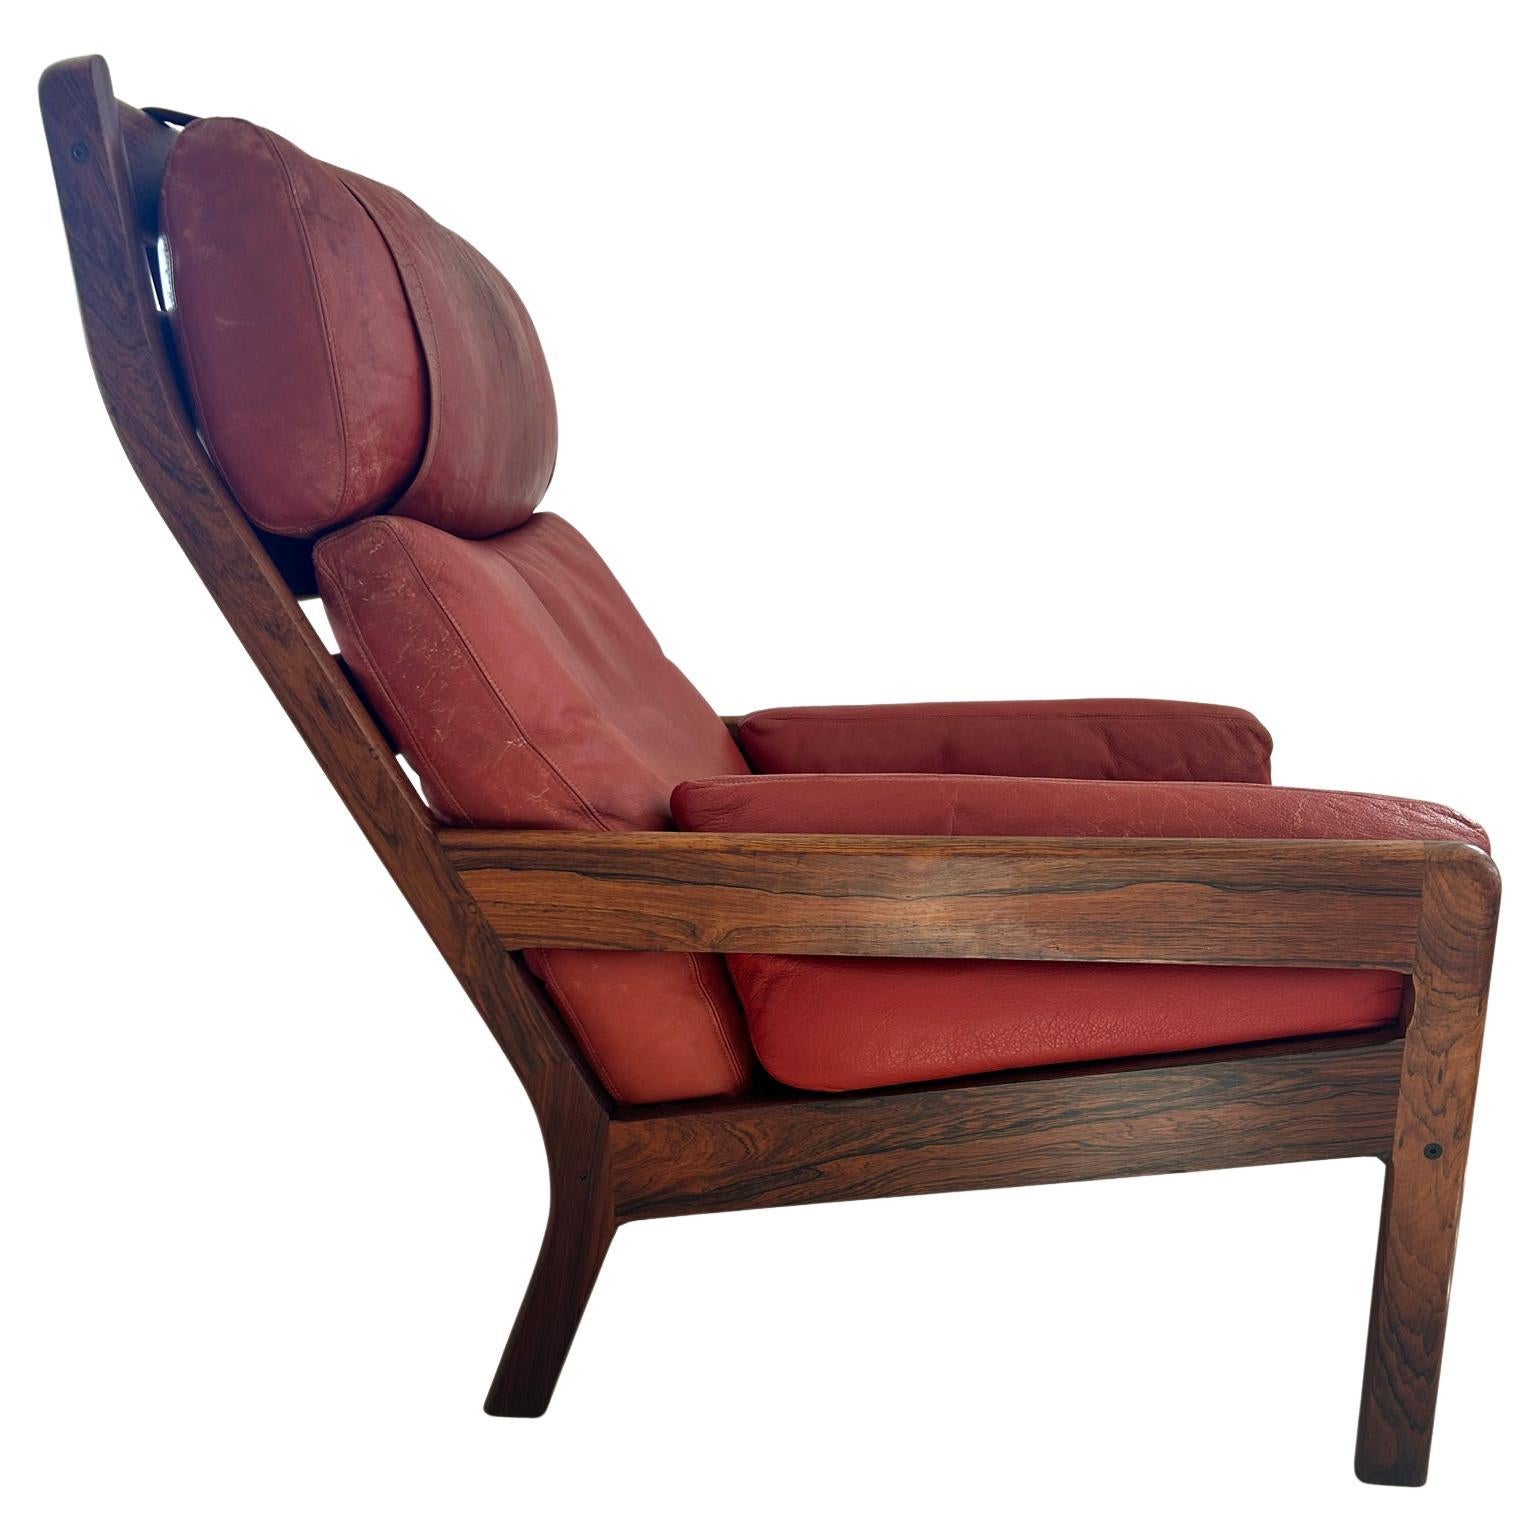 Fabuleuse chaise longue basse moderne scandinave attribuée à Illum Wikkelsø / Arne Norells c. 1960 Structure en bois de rose massif et coussins en cuir rouge. Fabriqué au Danemark. Situé à Brooklyn NYC

Dimensions : H 37